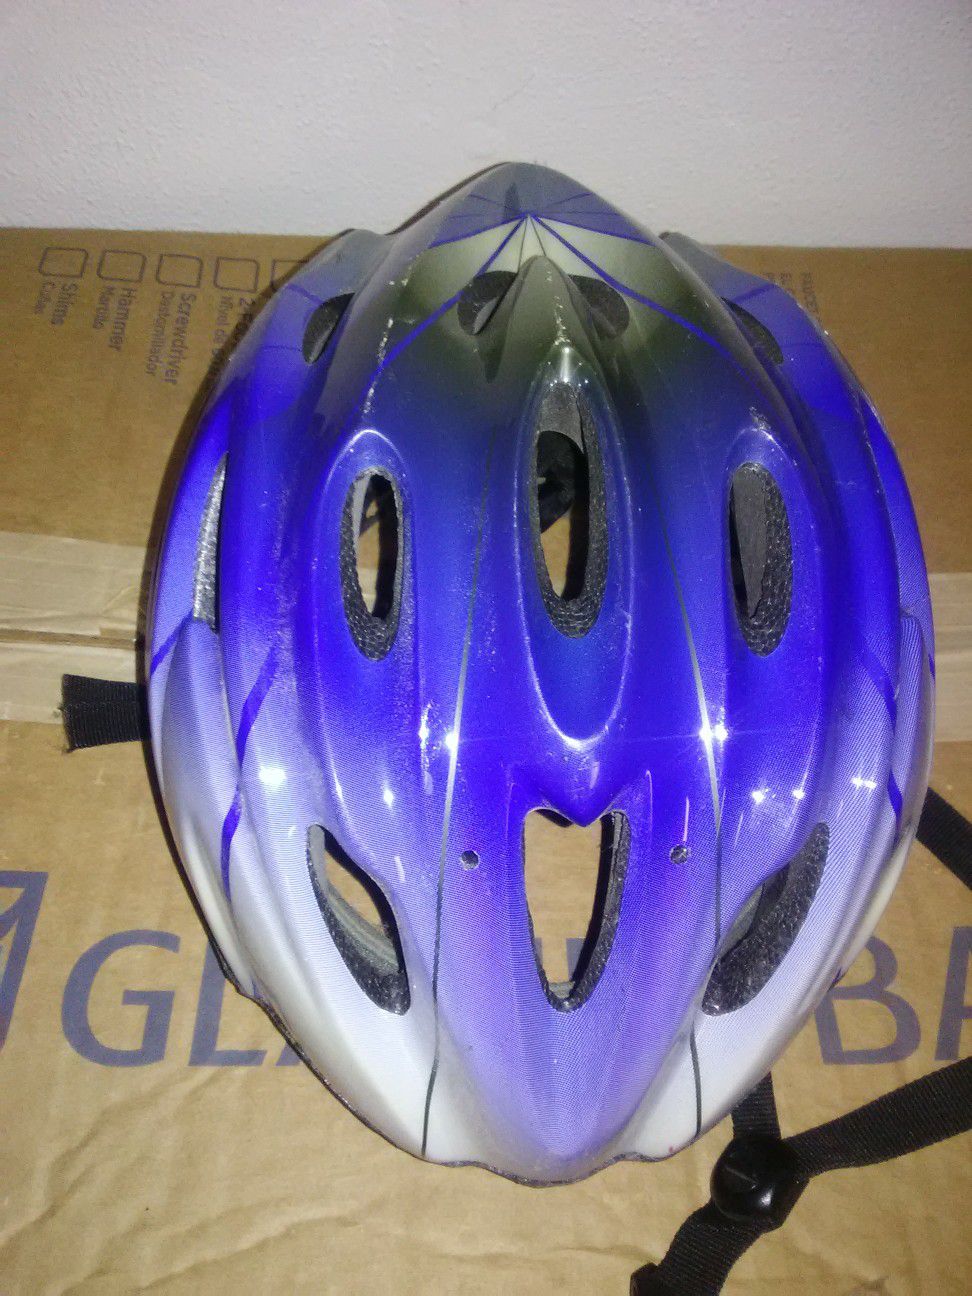 Schwinn bike helmet